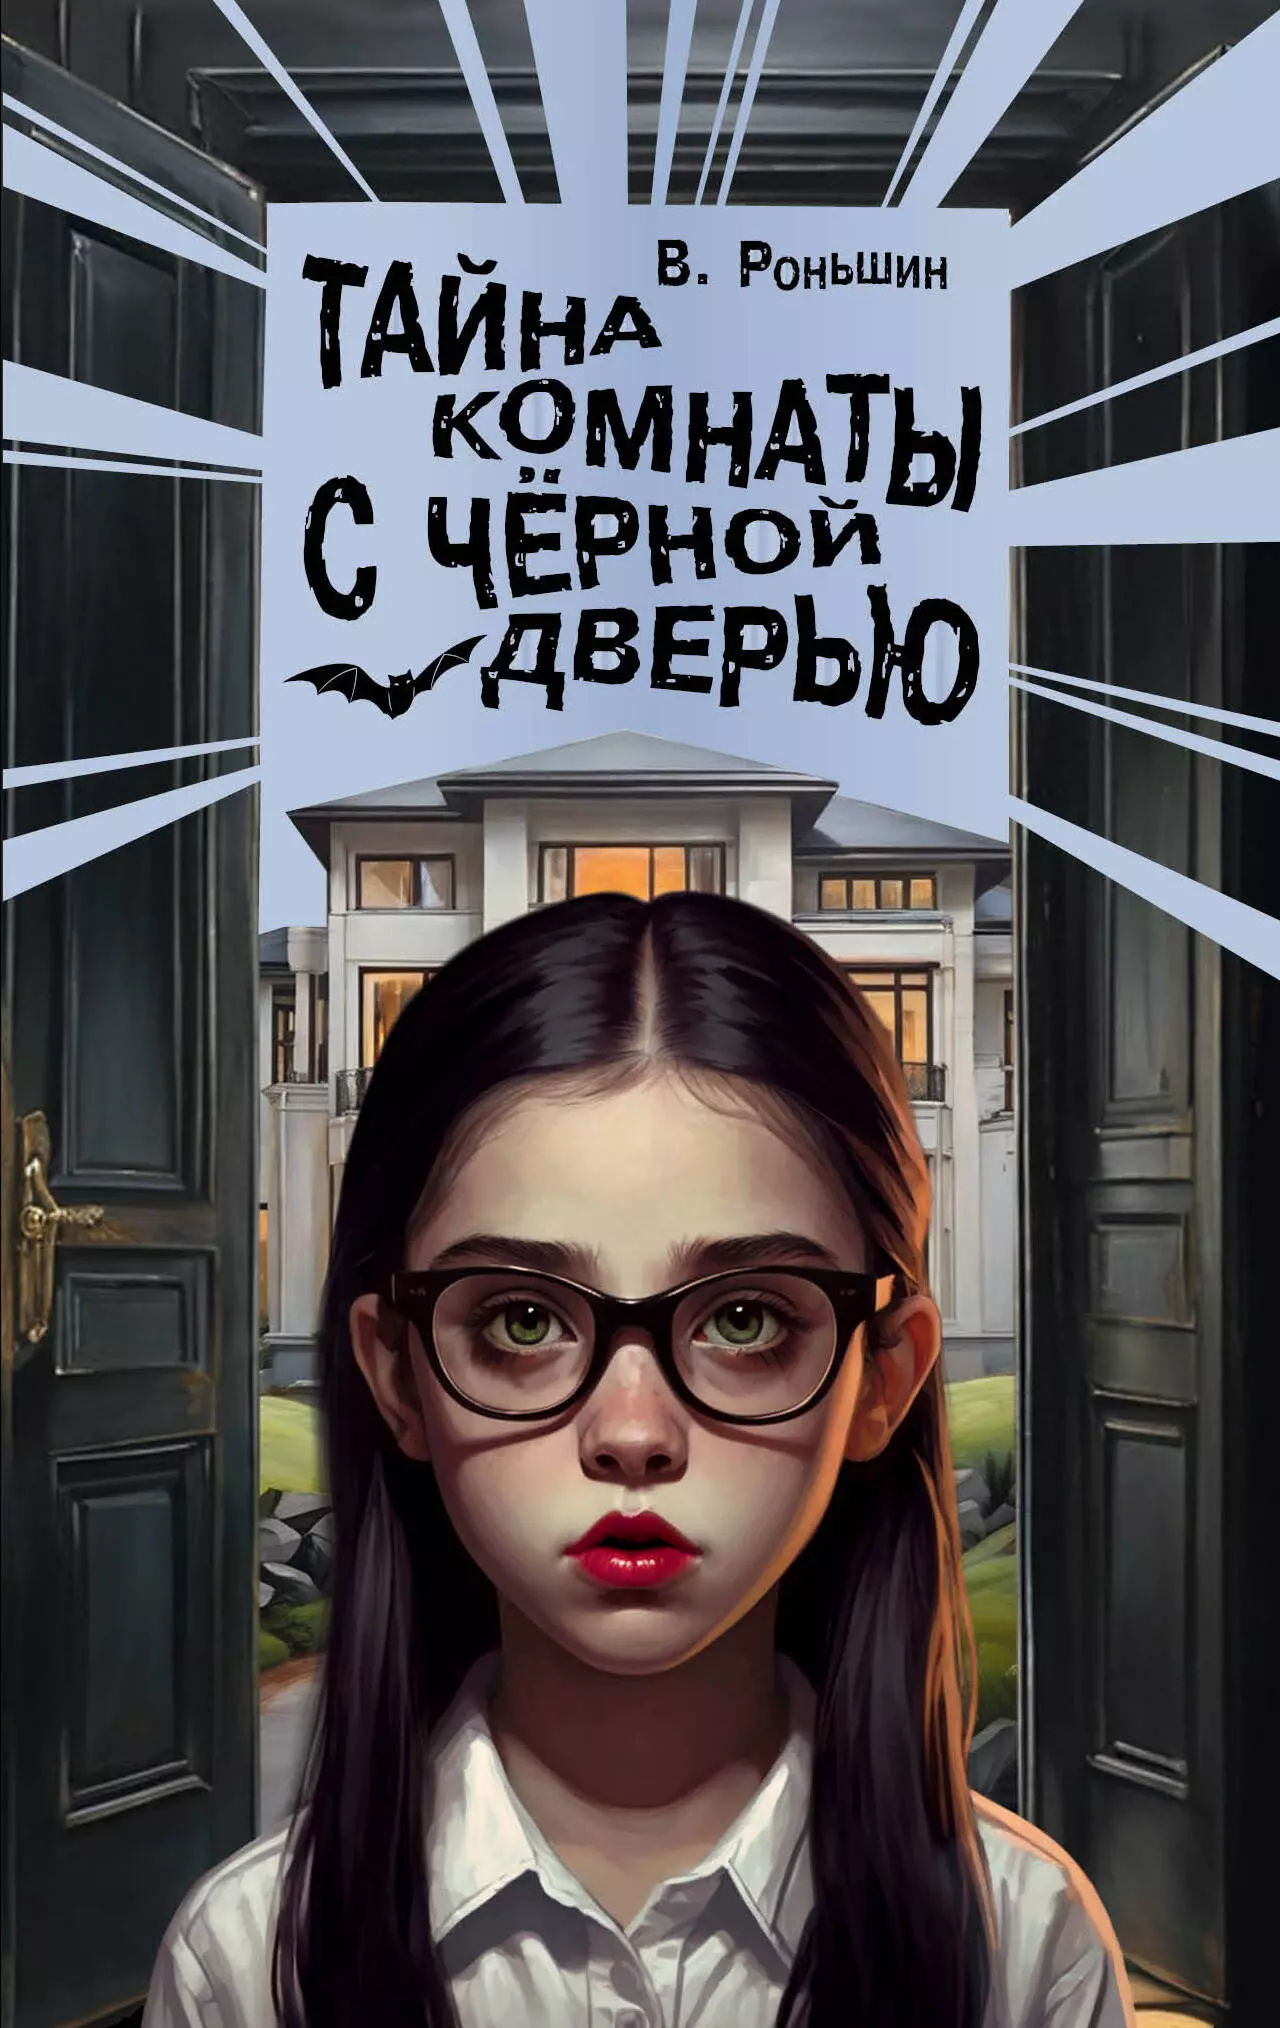 Роньшин Валерий Михайлович Тайна комнаты с черной дверью